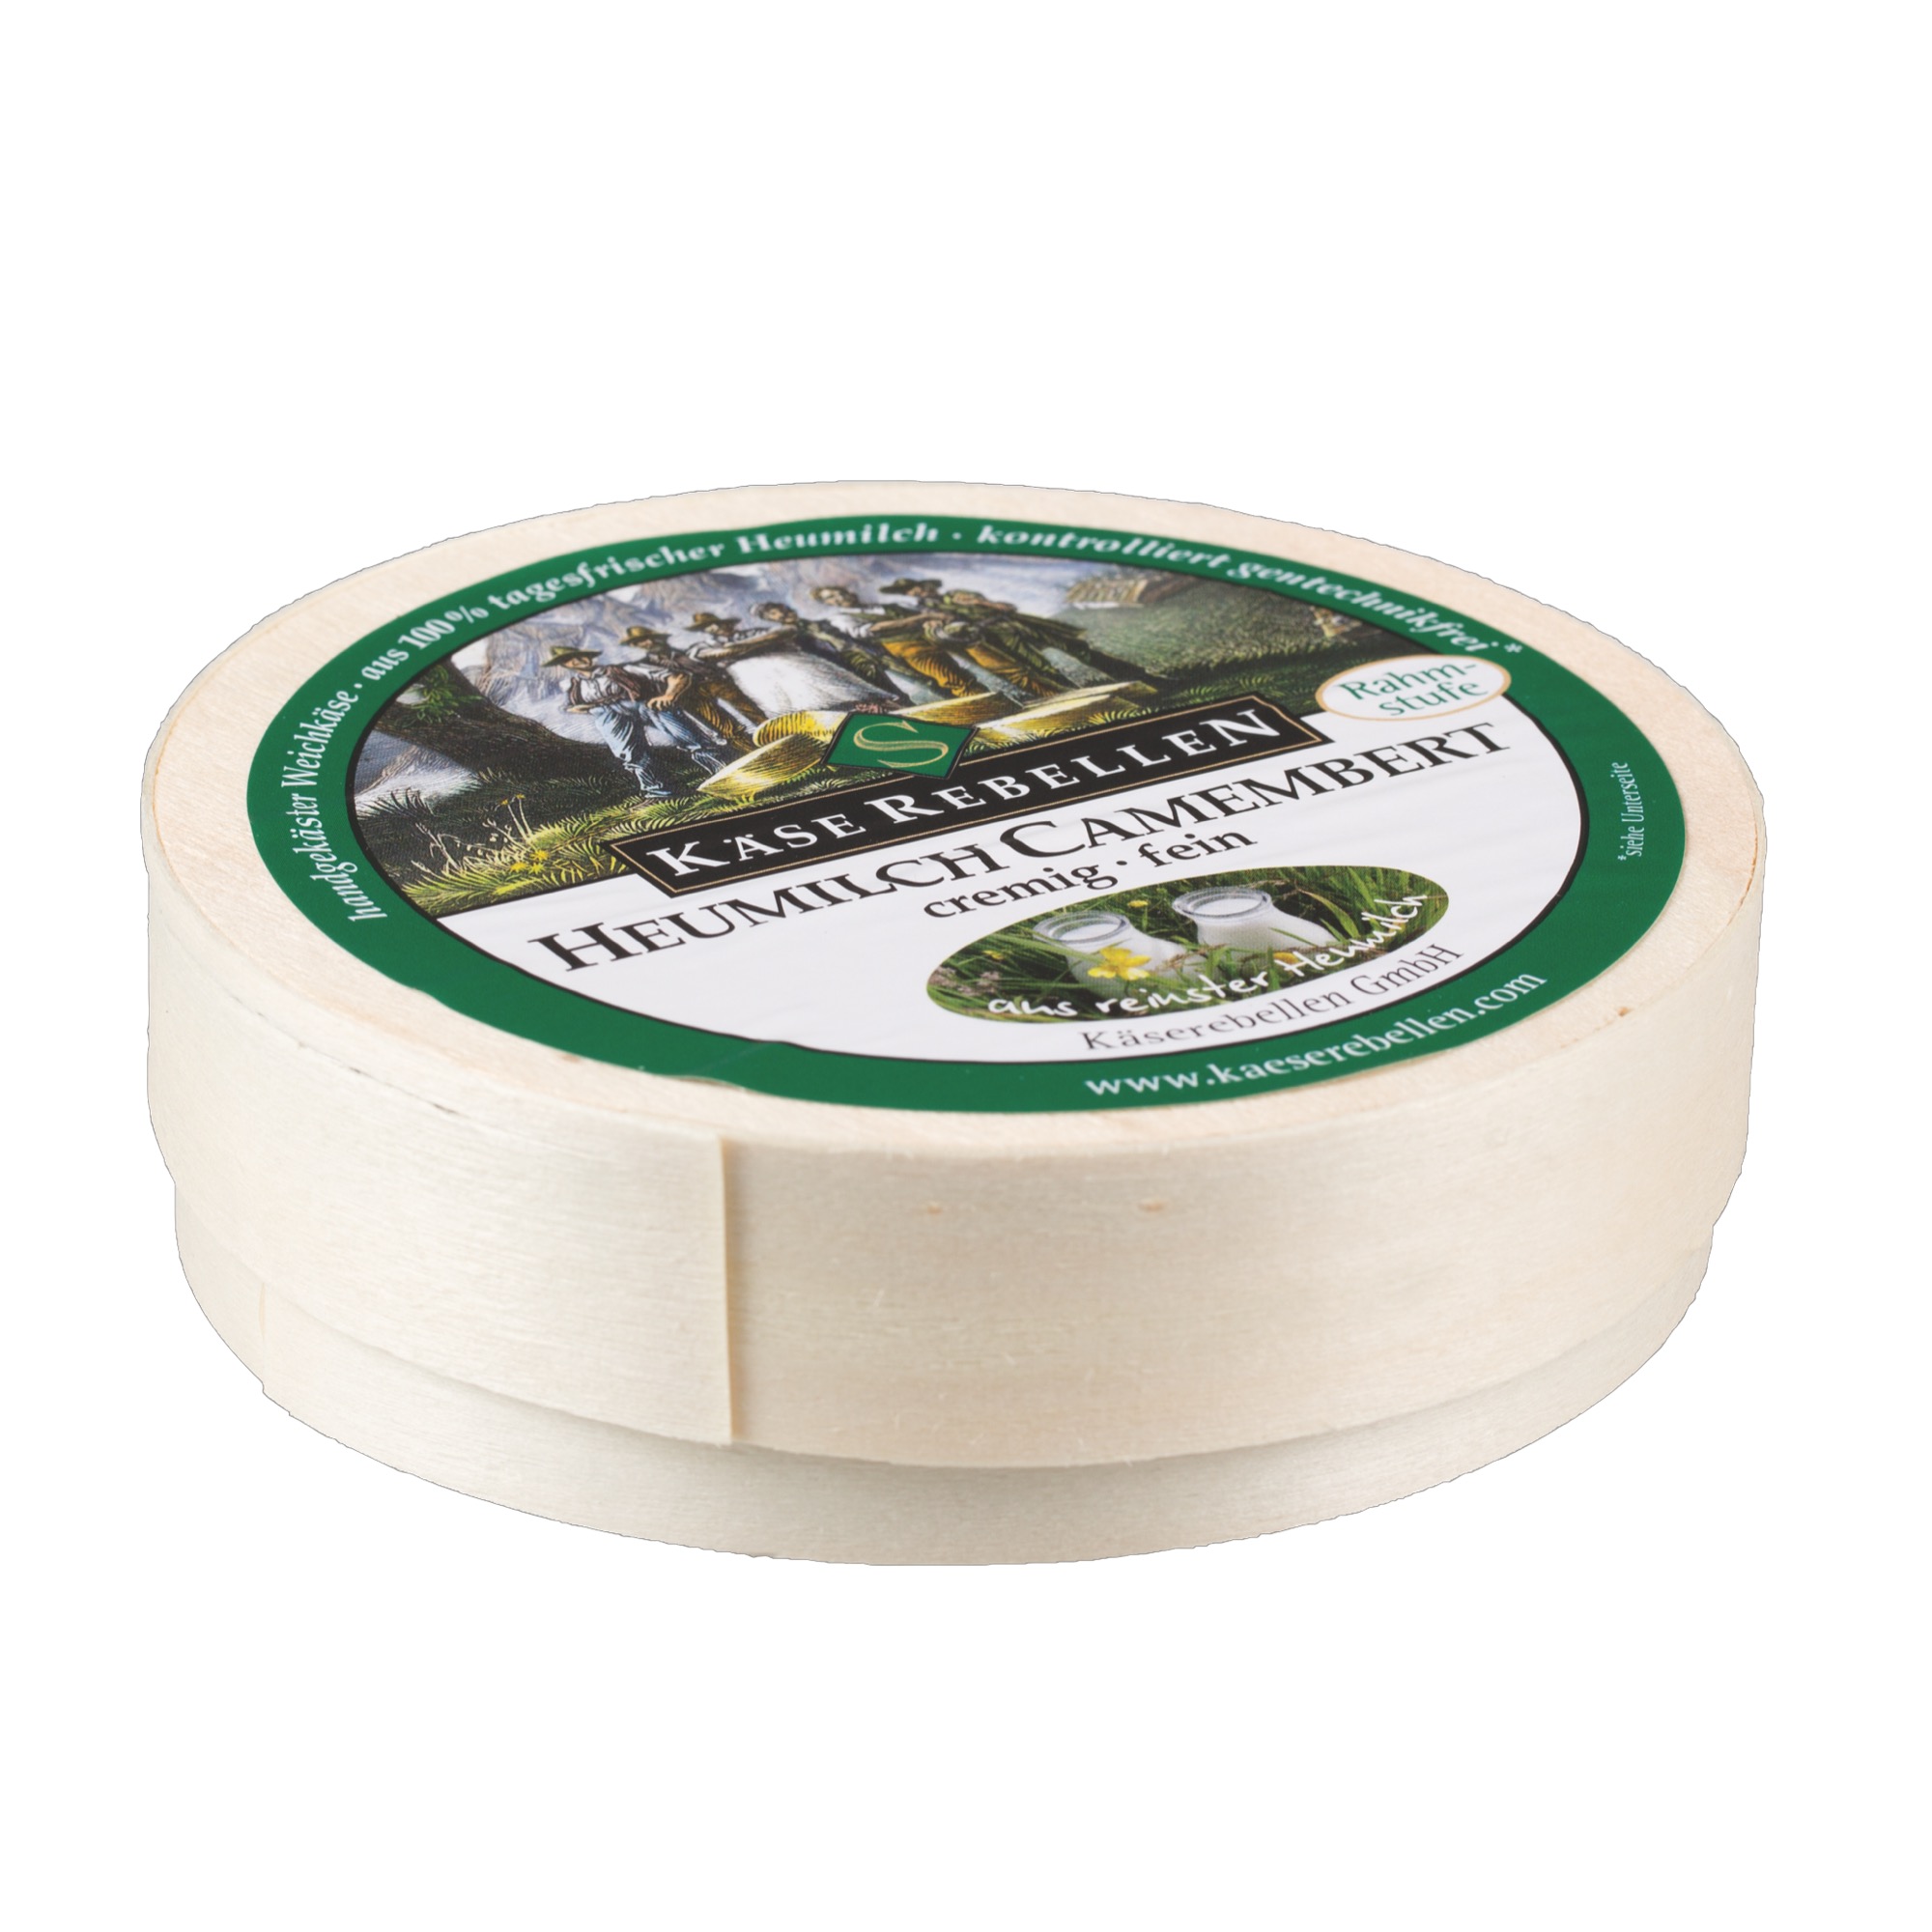 Käsemacher Heumilch Camembert 250g